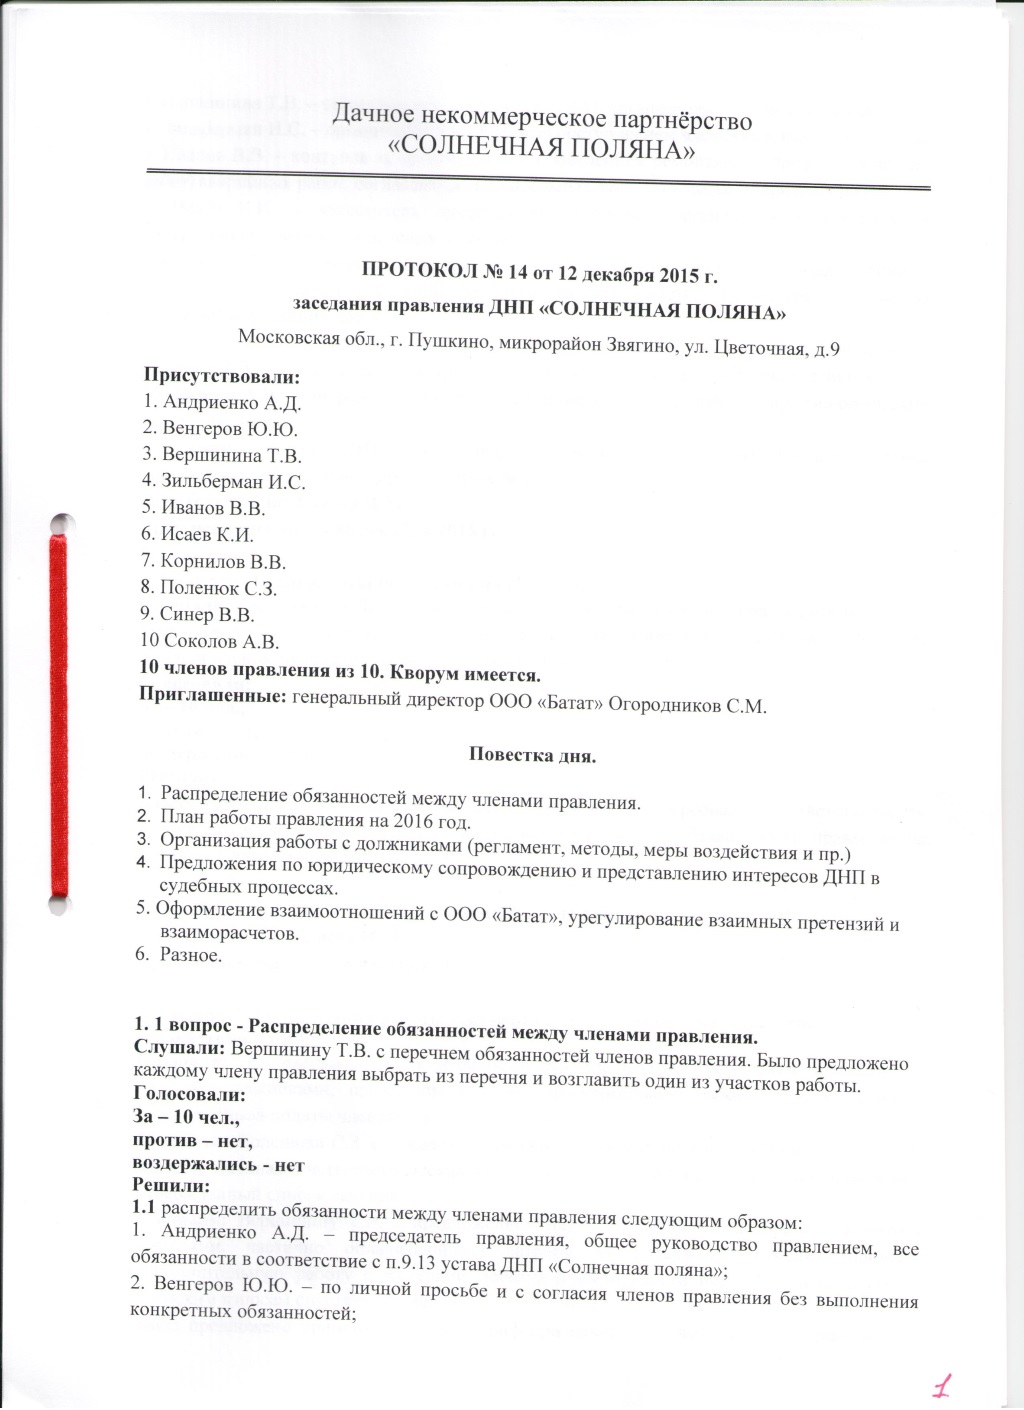 ПРОТОКОЛ  заседания правления № 14 от 12 декабря 2015 г.